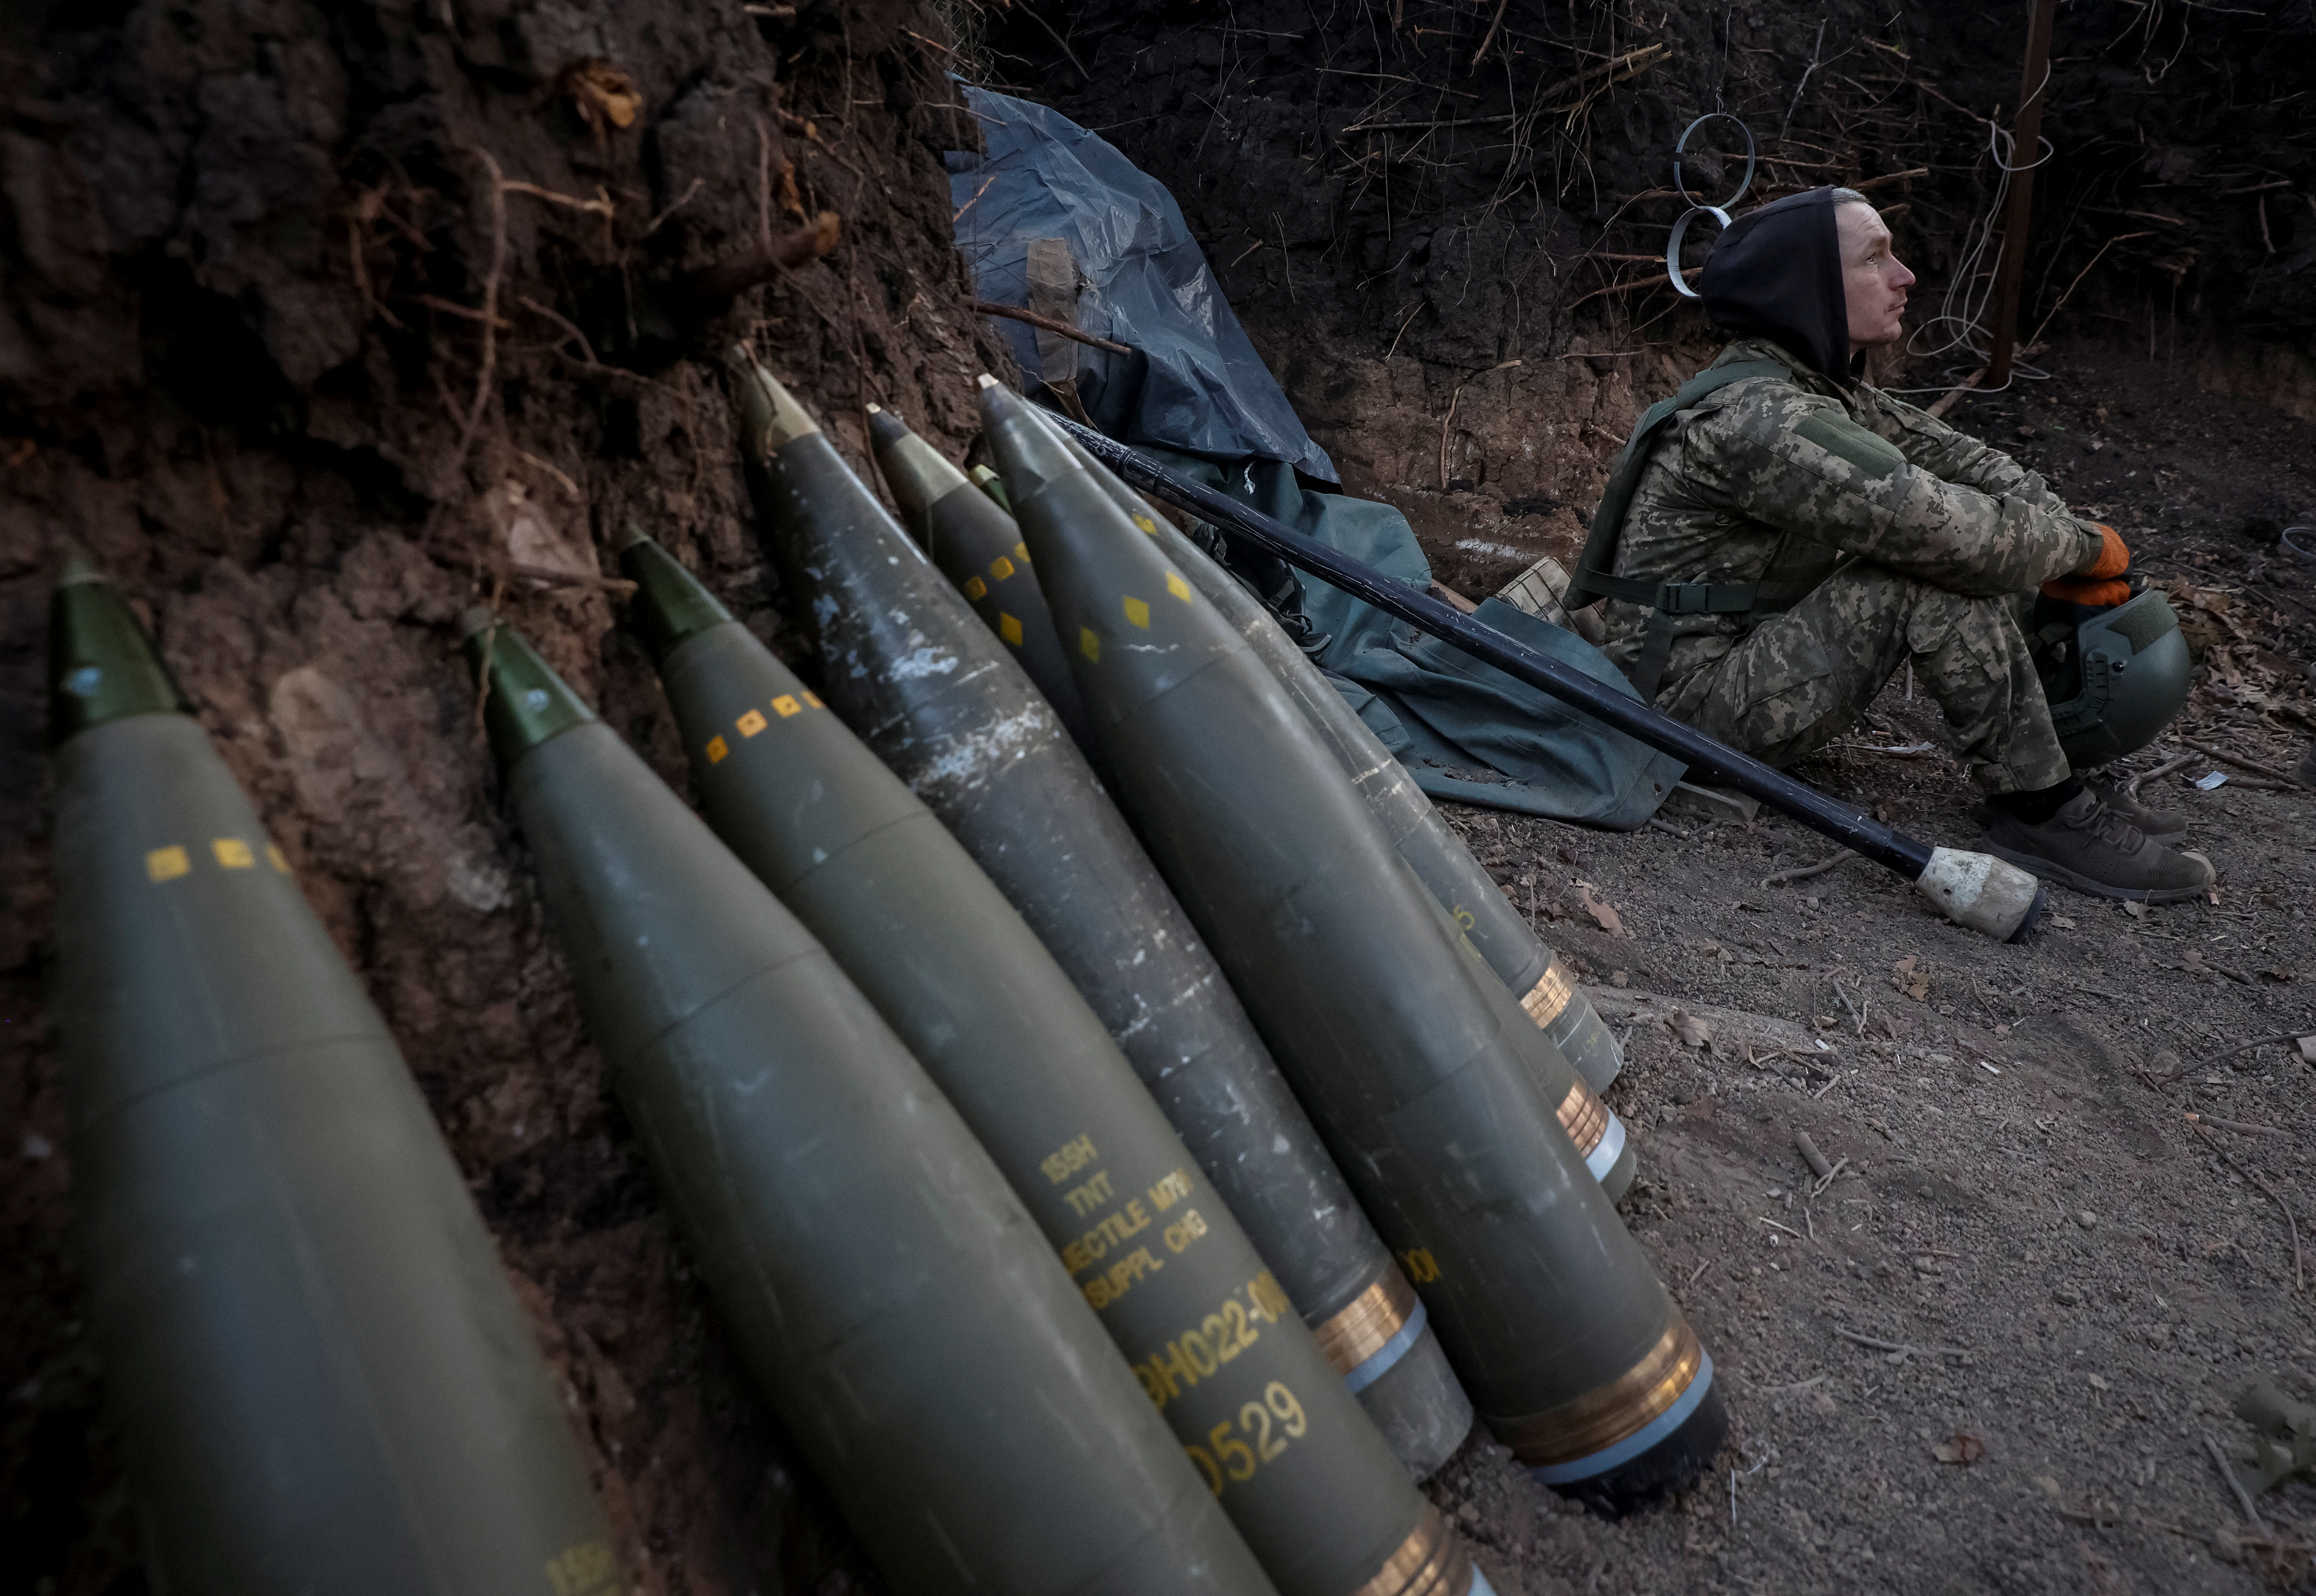 Ukrainian serviceman prepares a howitzer to fire towards Russian troops in Donetsk region